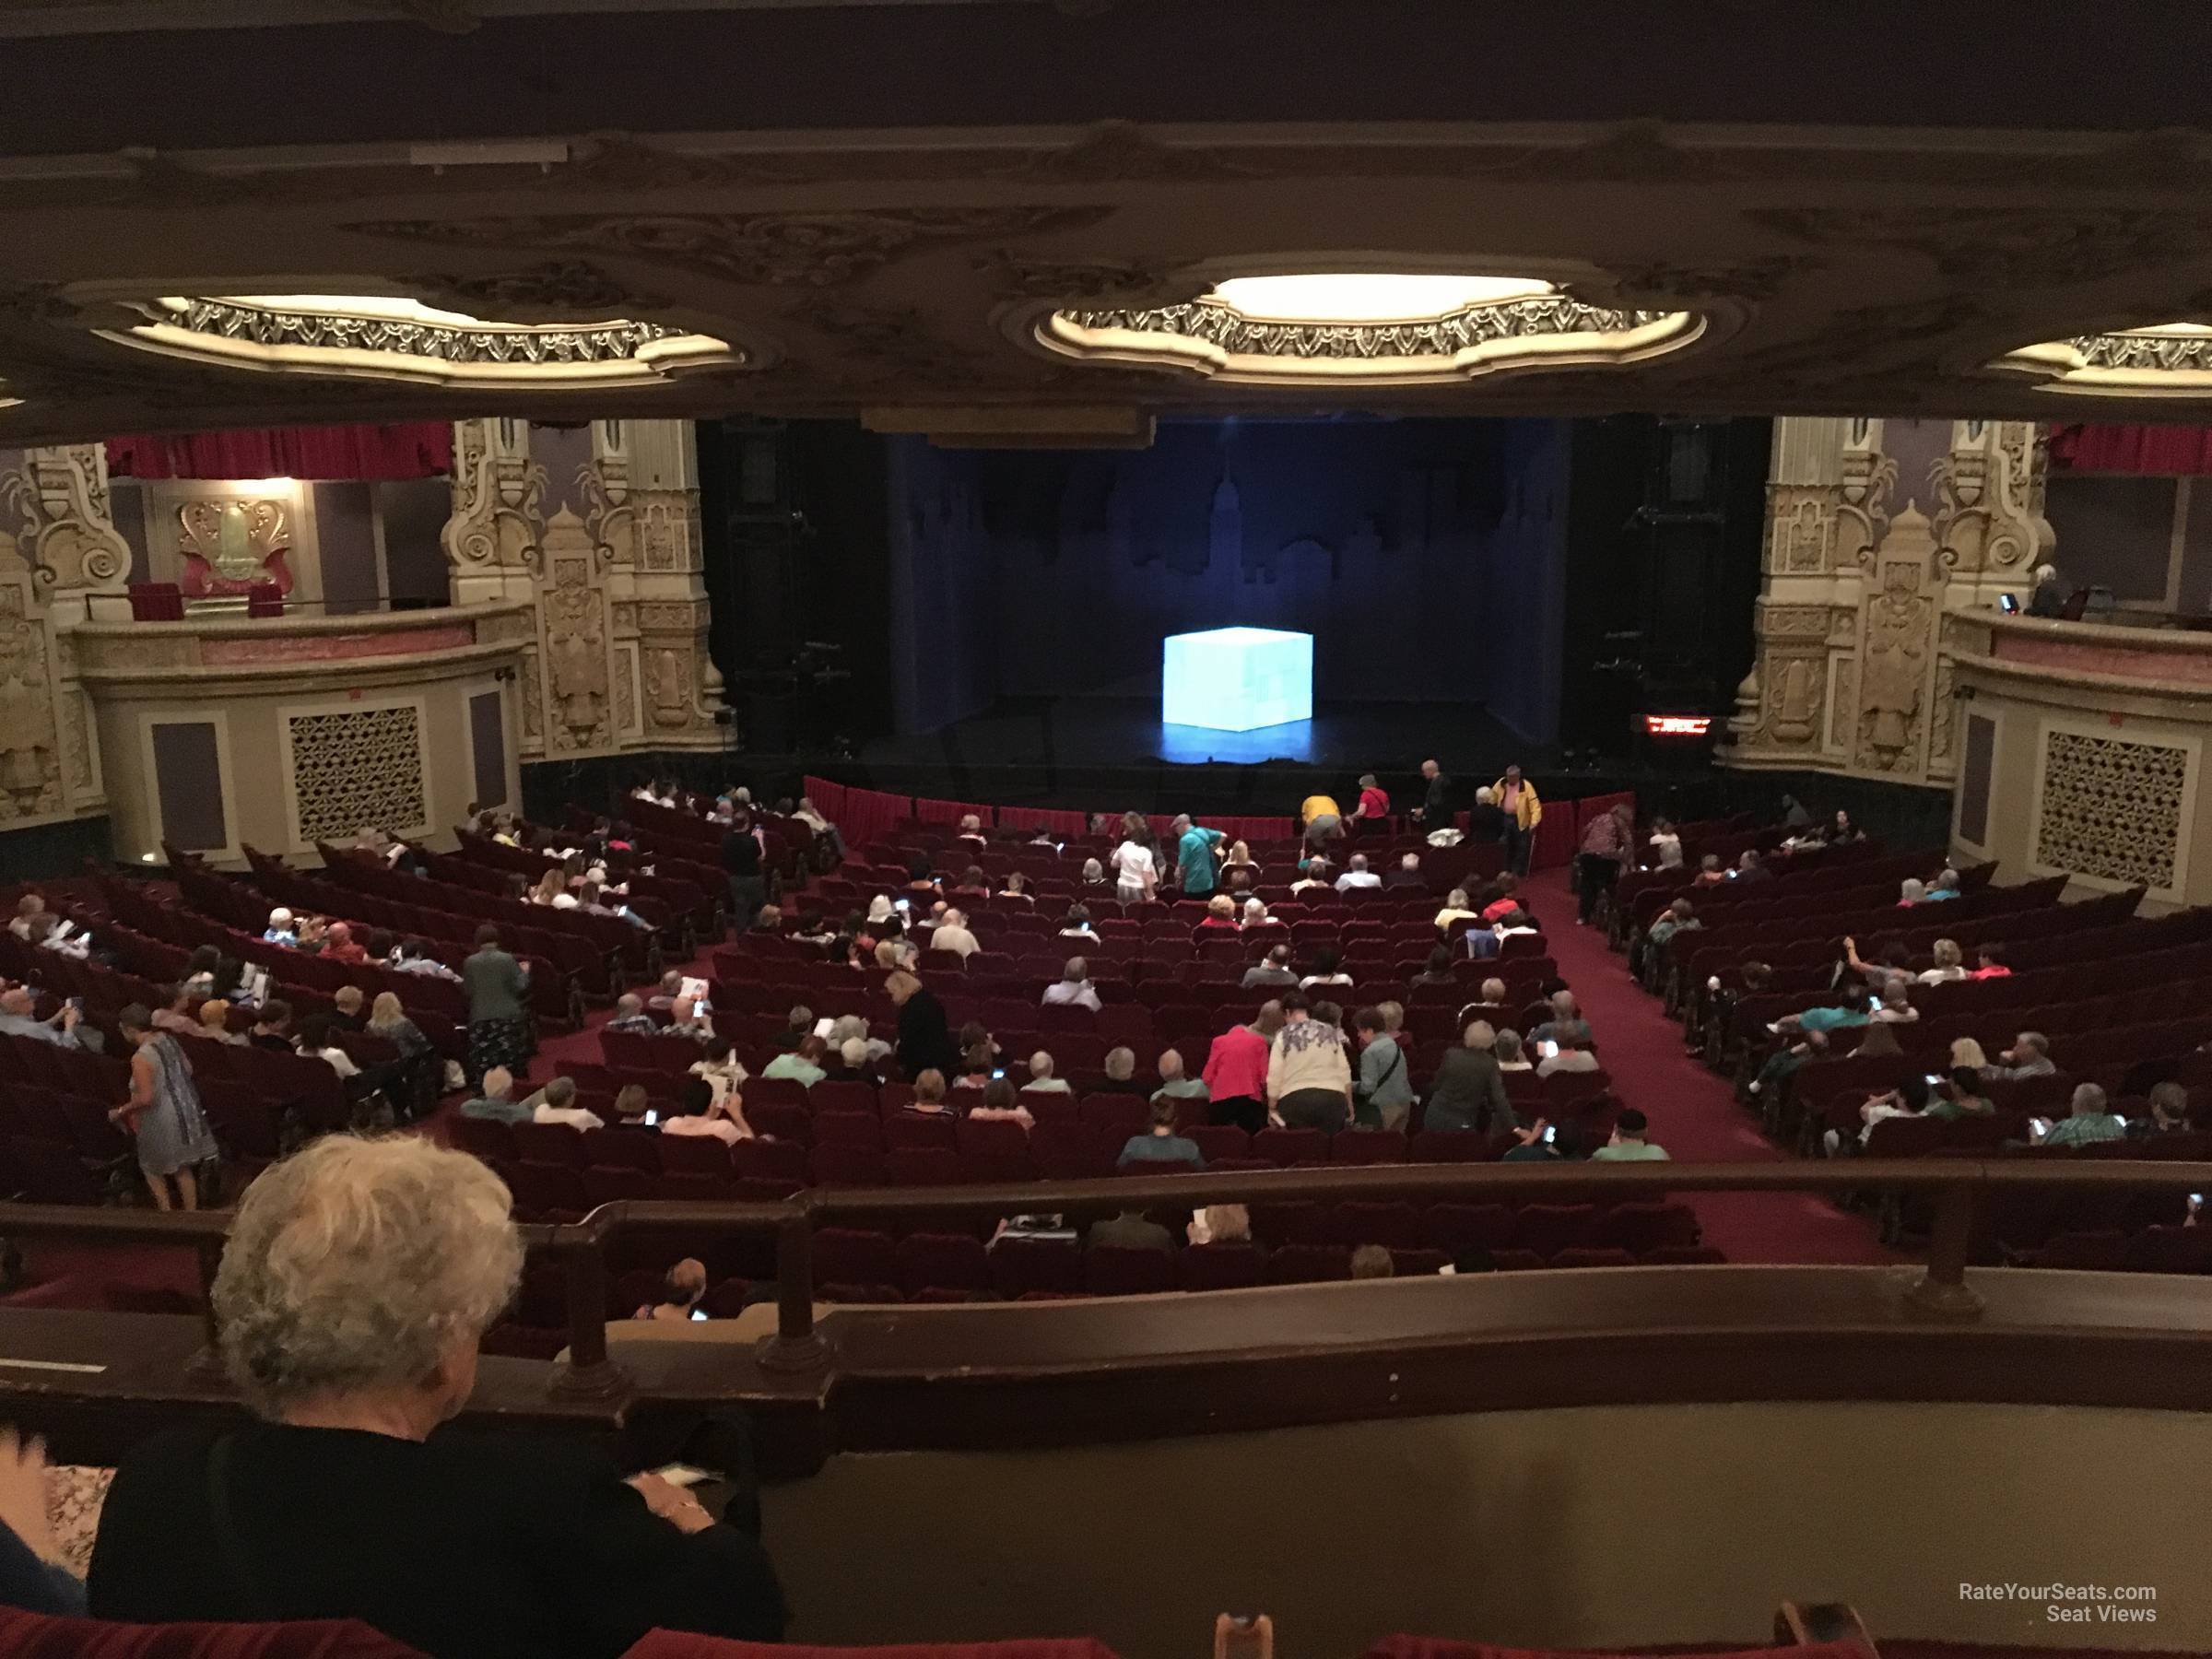 dress circle center, row c seat view  - nederlander theatre (chicago)